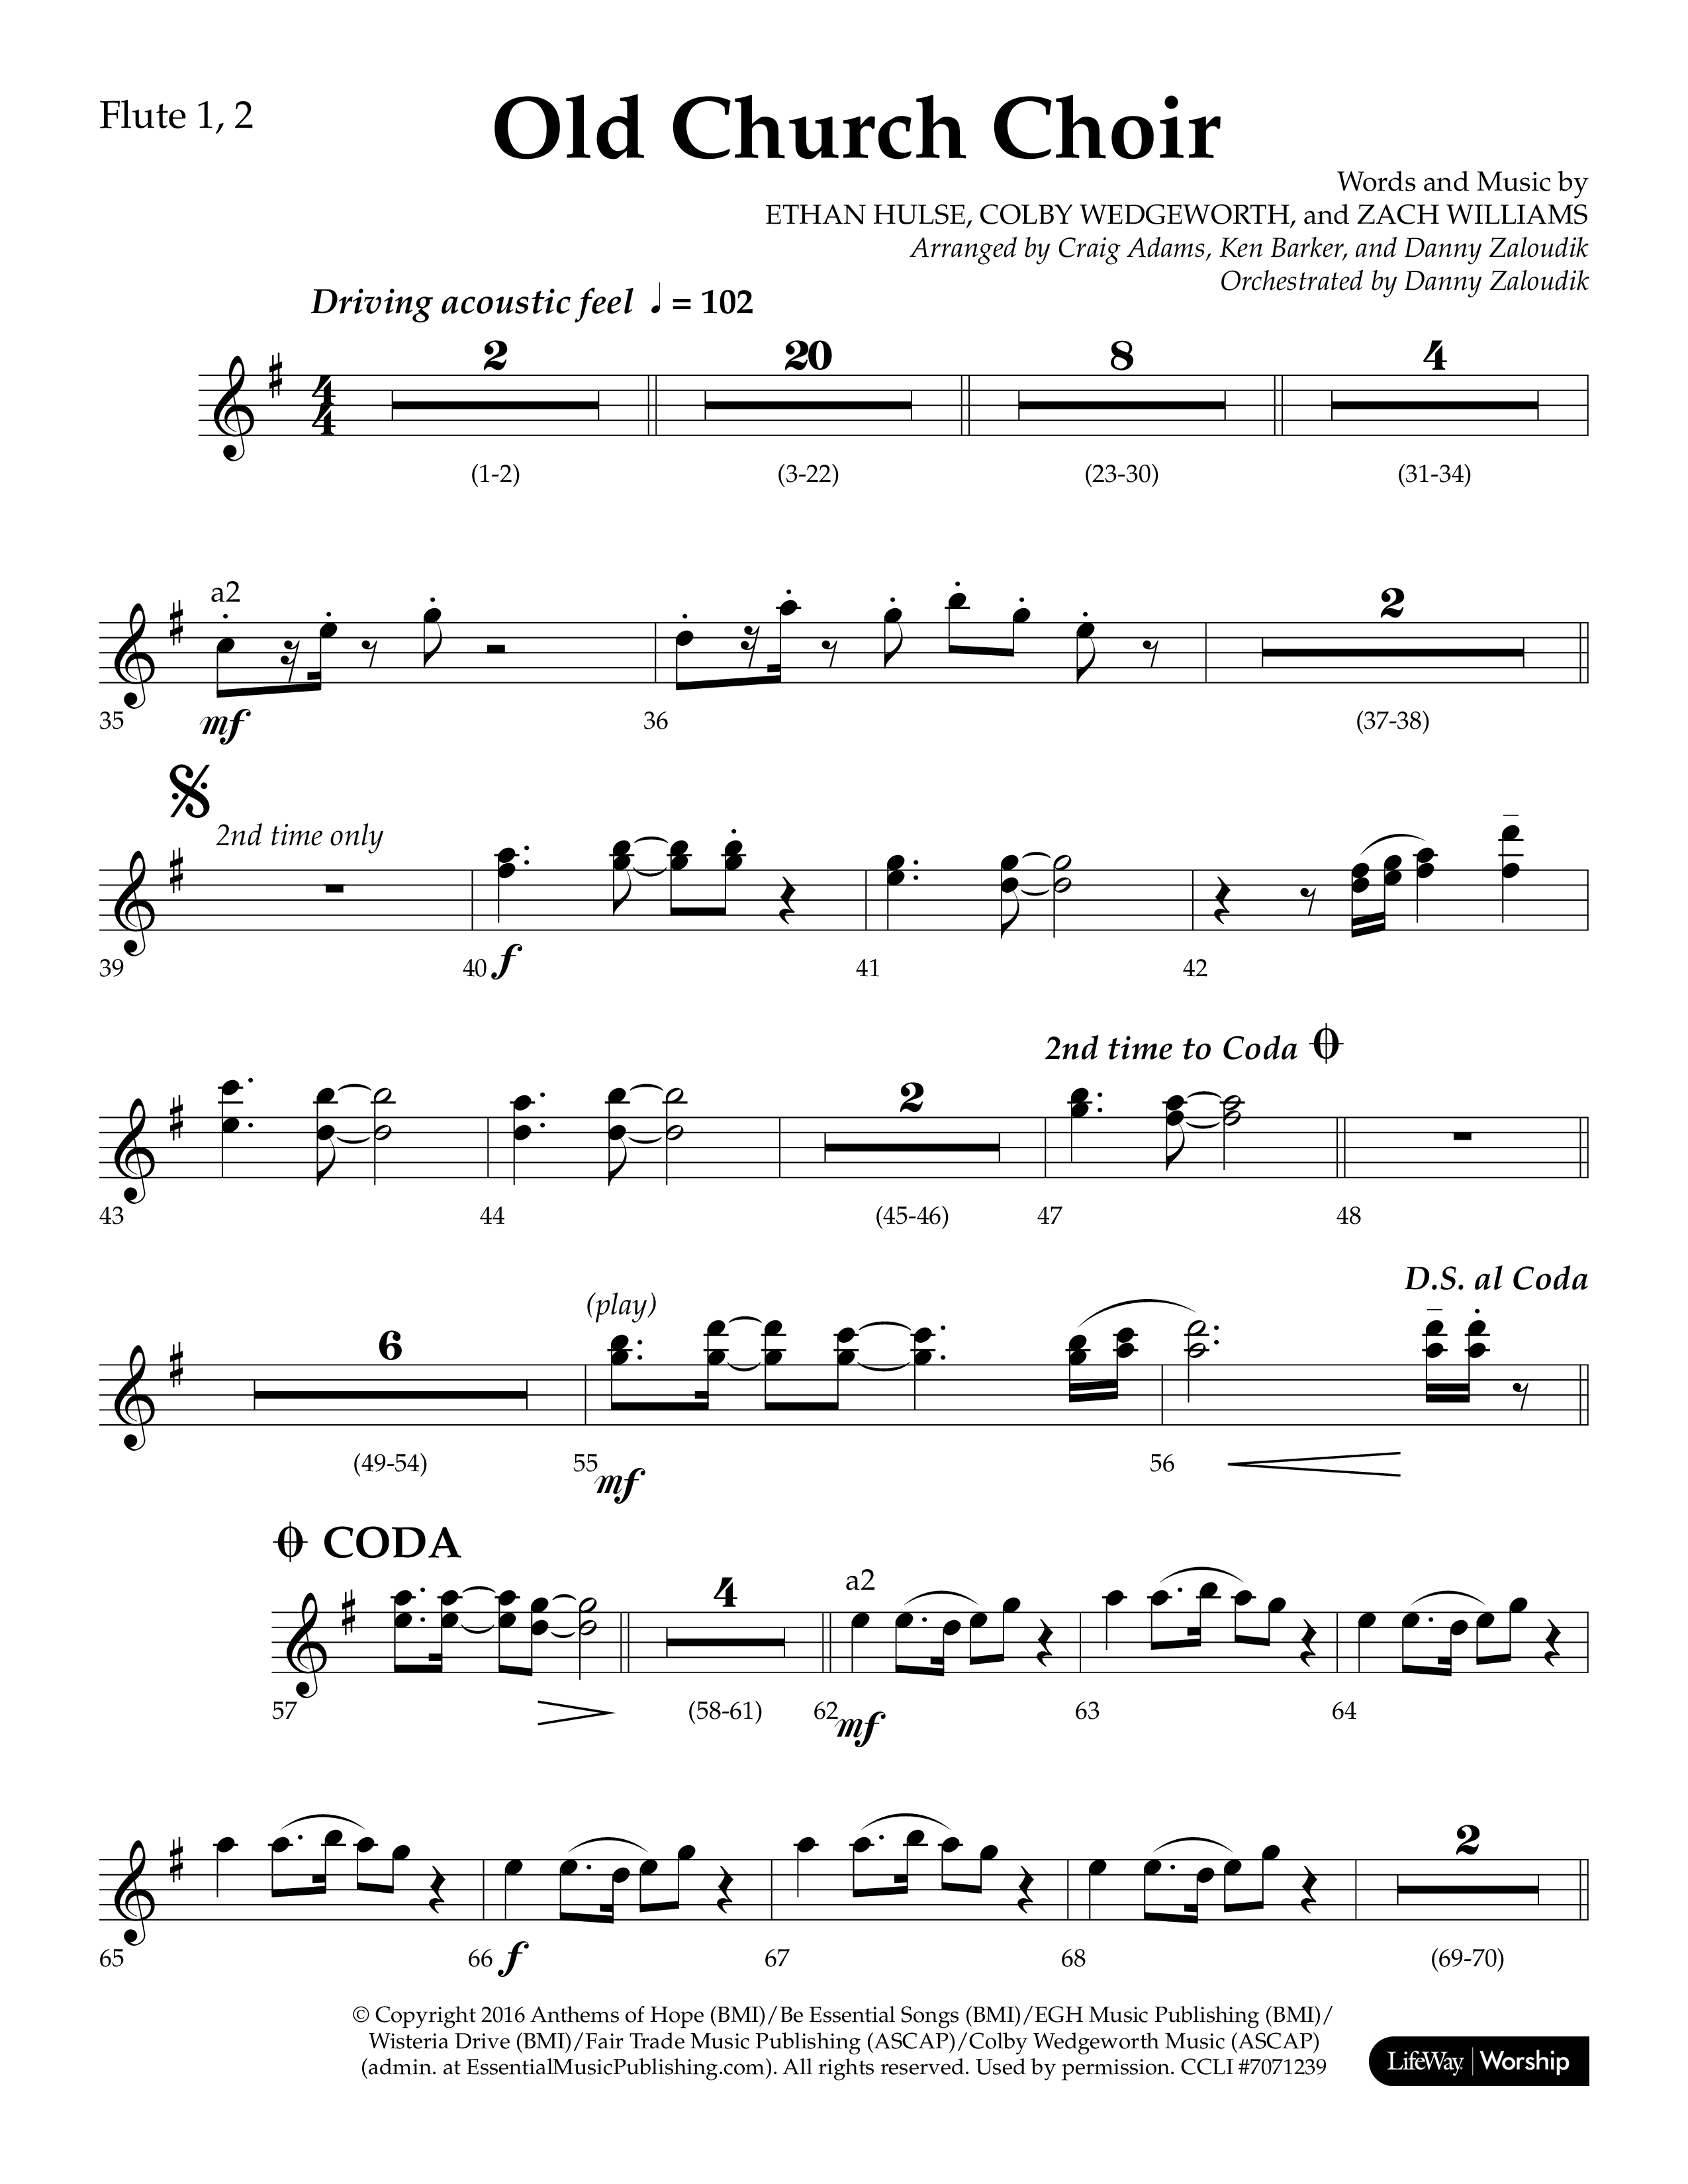 Old Church Choir (Choral Anthem SATB) Flute 1/2 (Lifeway Choral / Arr. Ken Barker / Arr. Craig Adams / Arr. Danny Zaloudik)